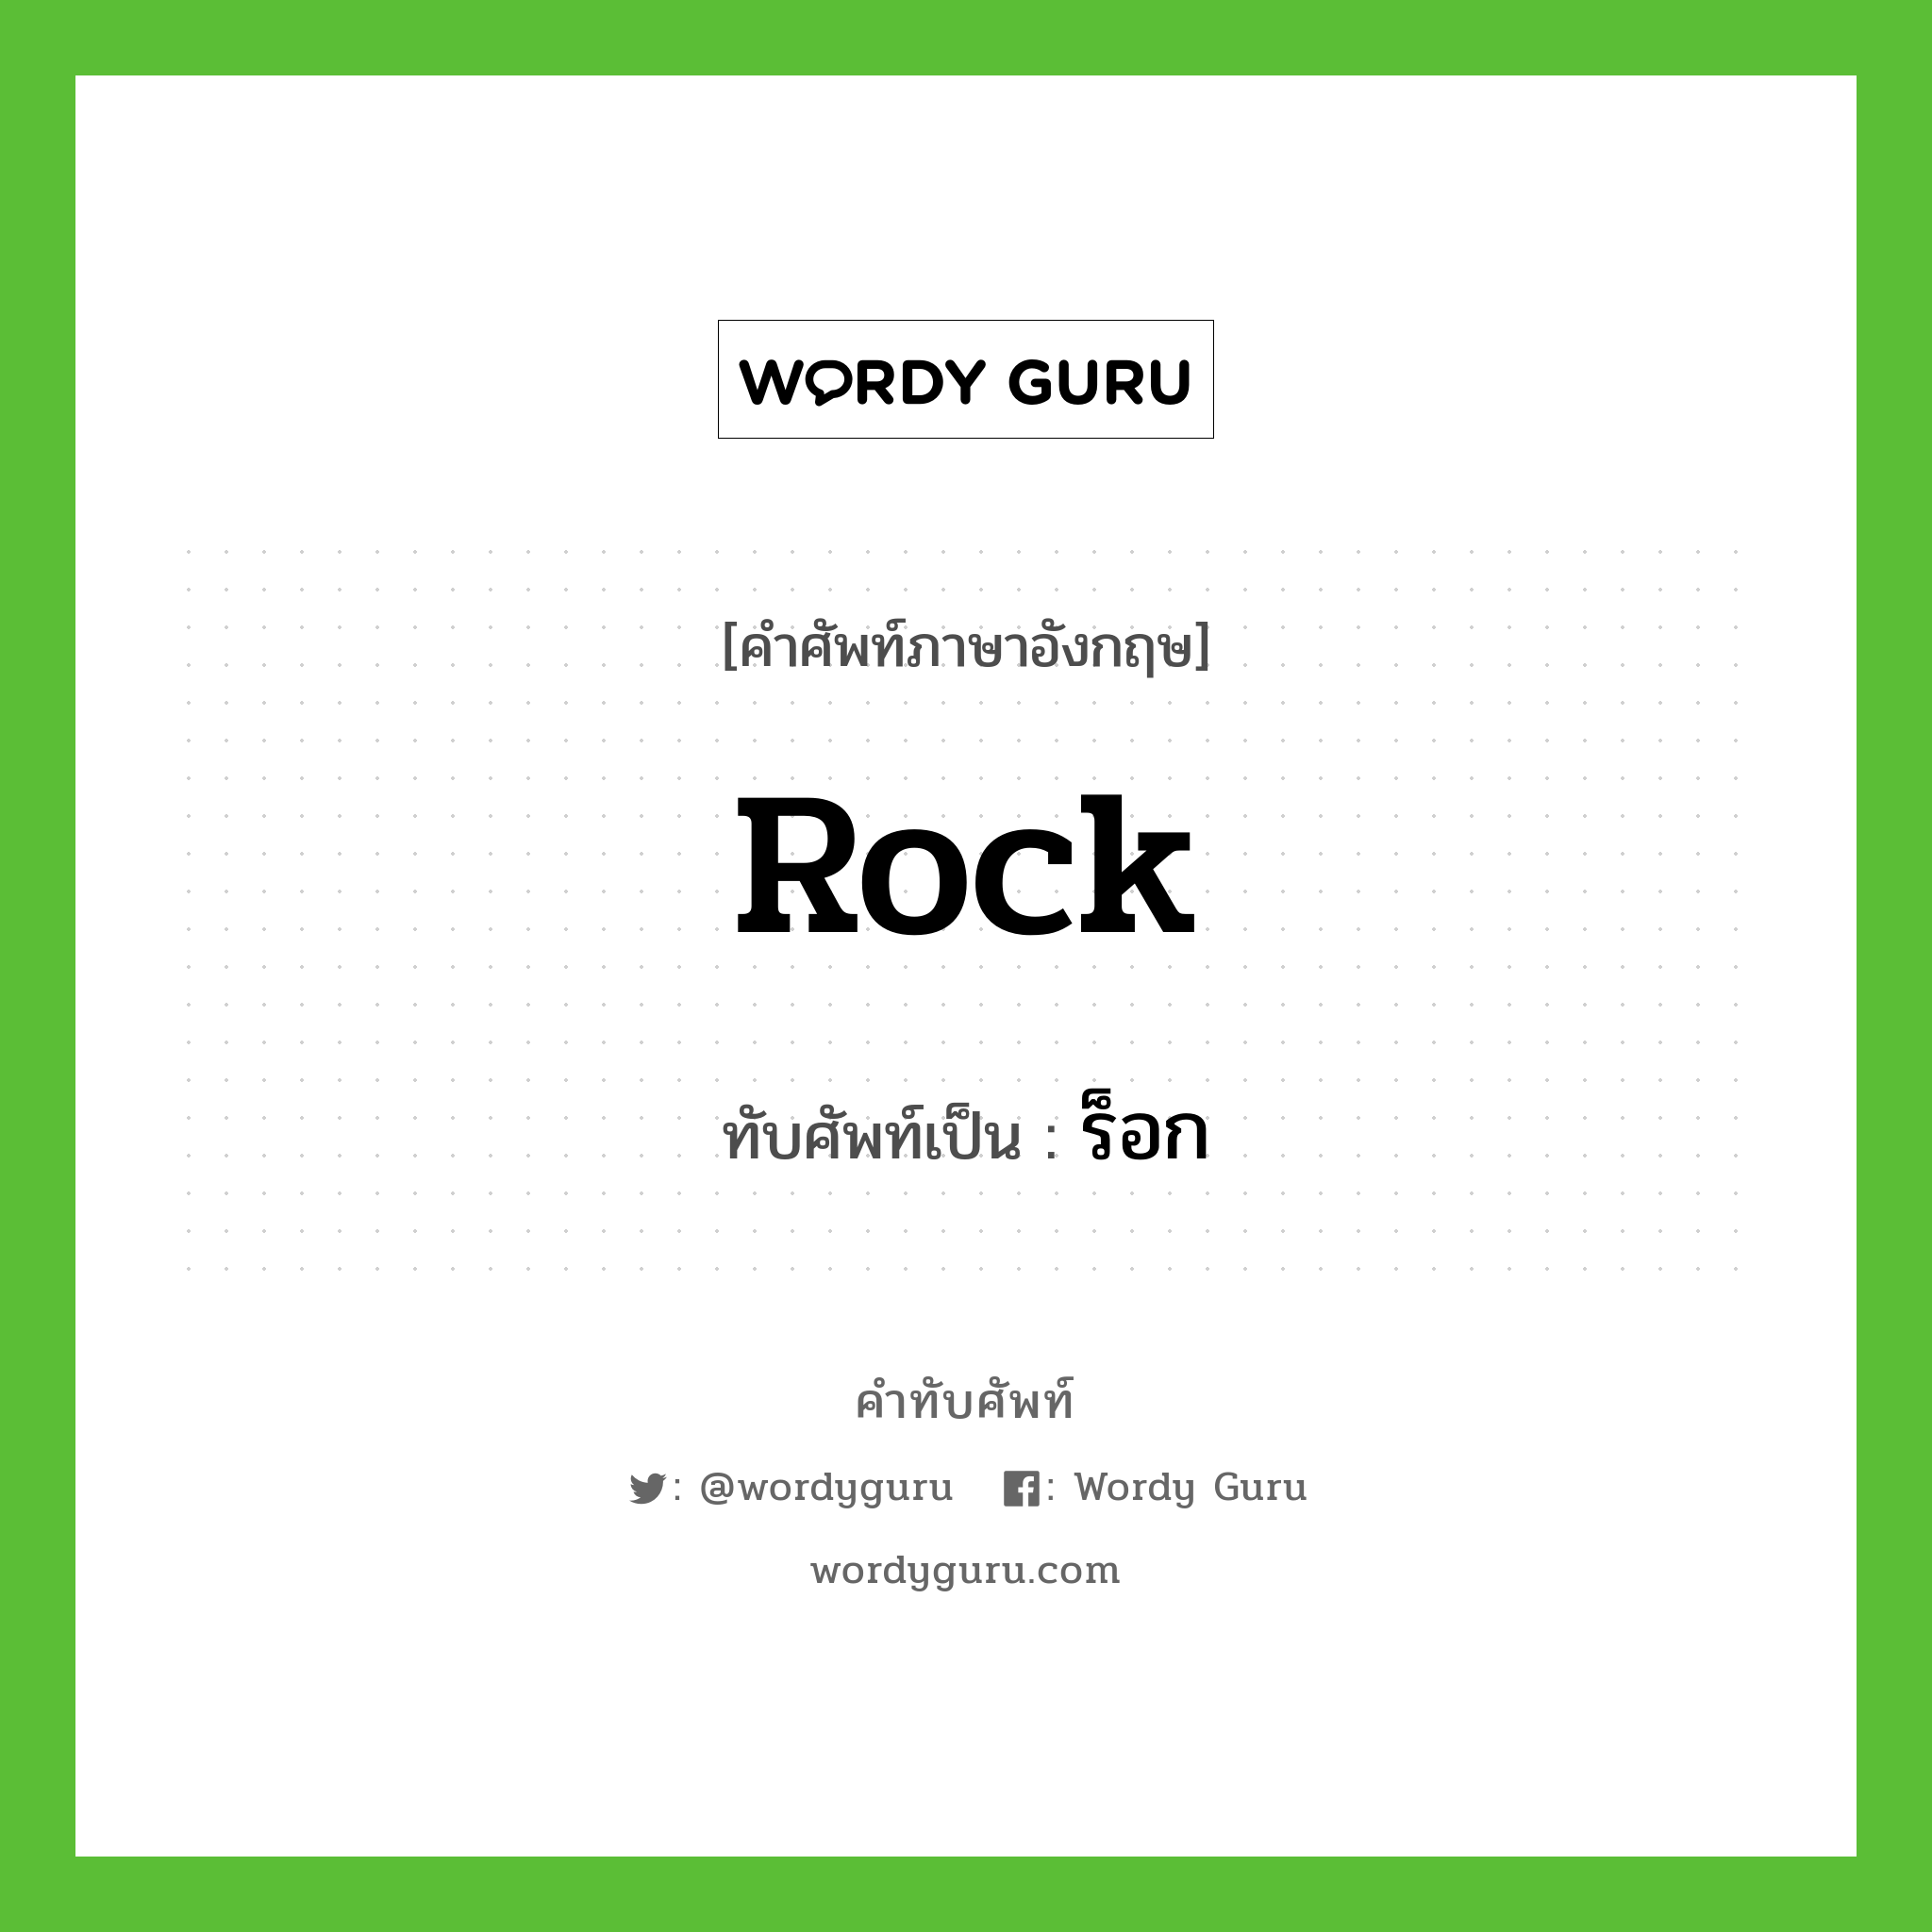 rock เขียนเป็นคำไทยว่าอะไร?, คำศัพท์ภาษาอังกฤษ rock ทับศัพท์เป็น ร็อก